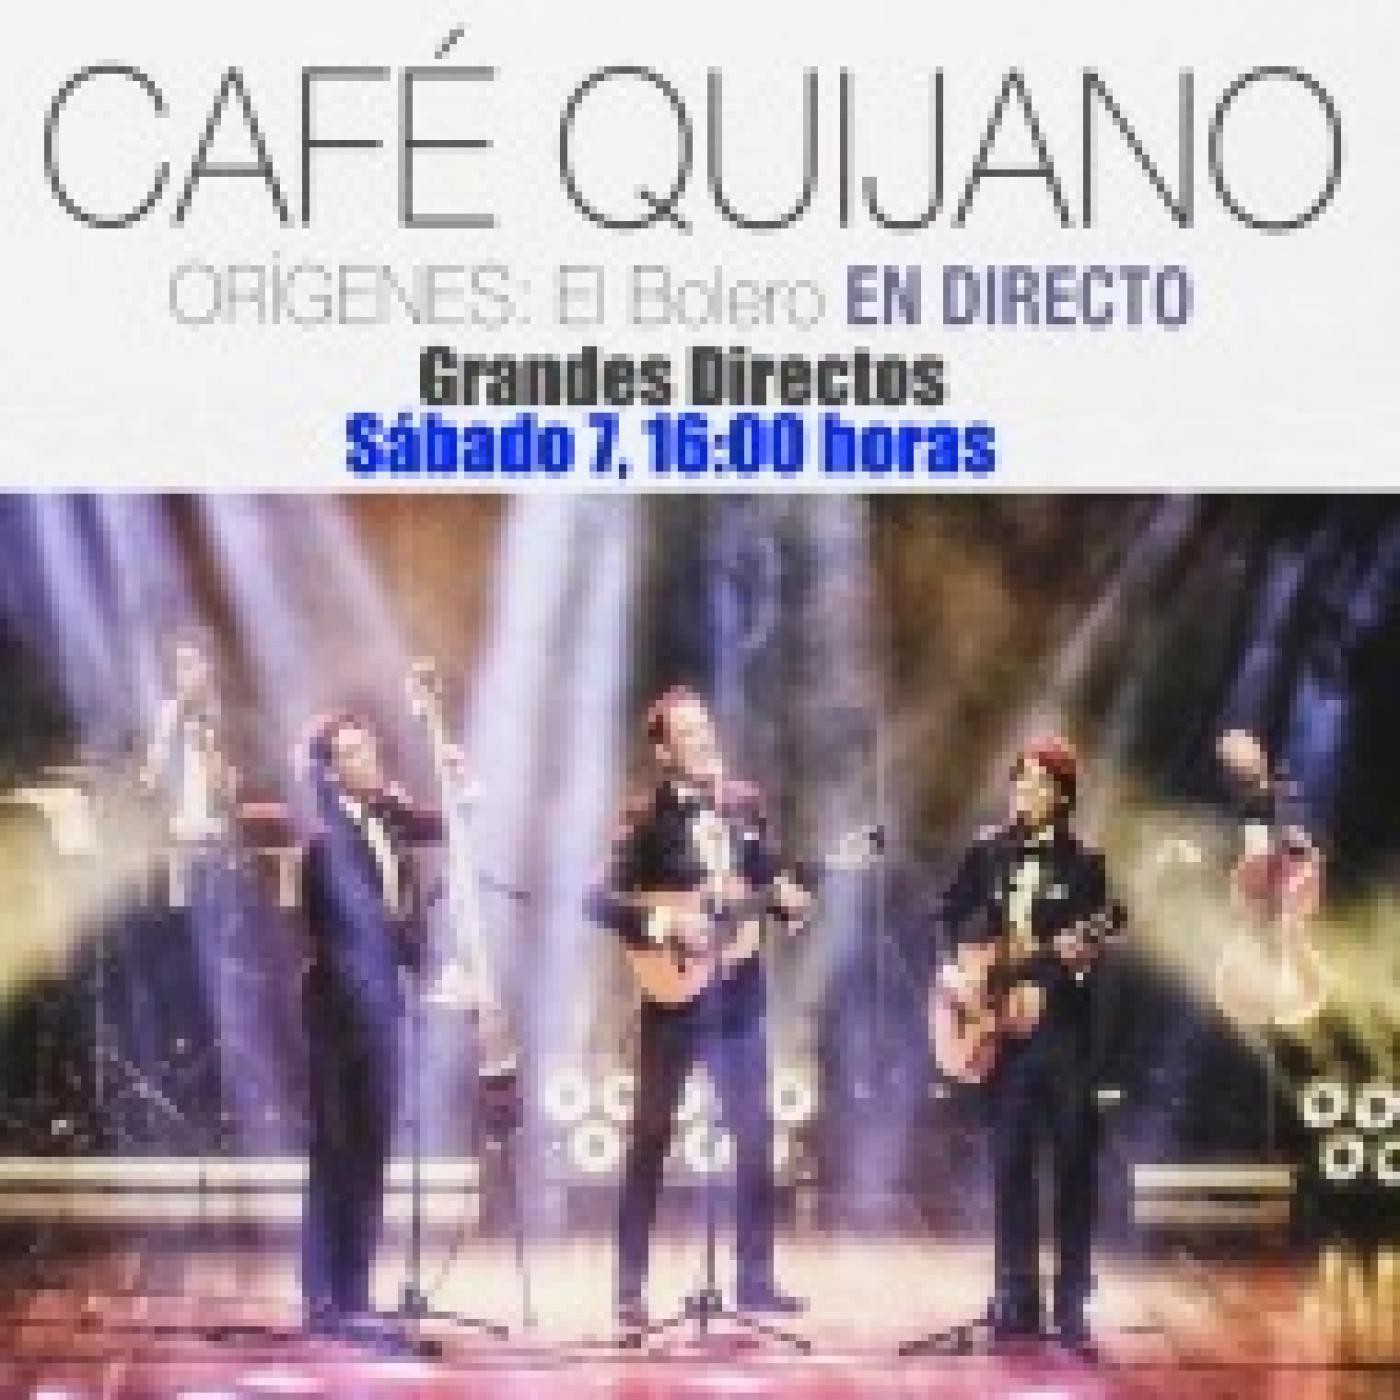 Cafe Quijano - Origenes: El Bolero.rar